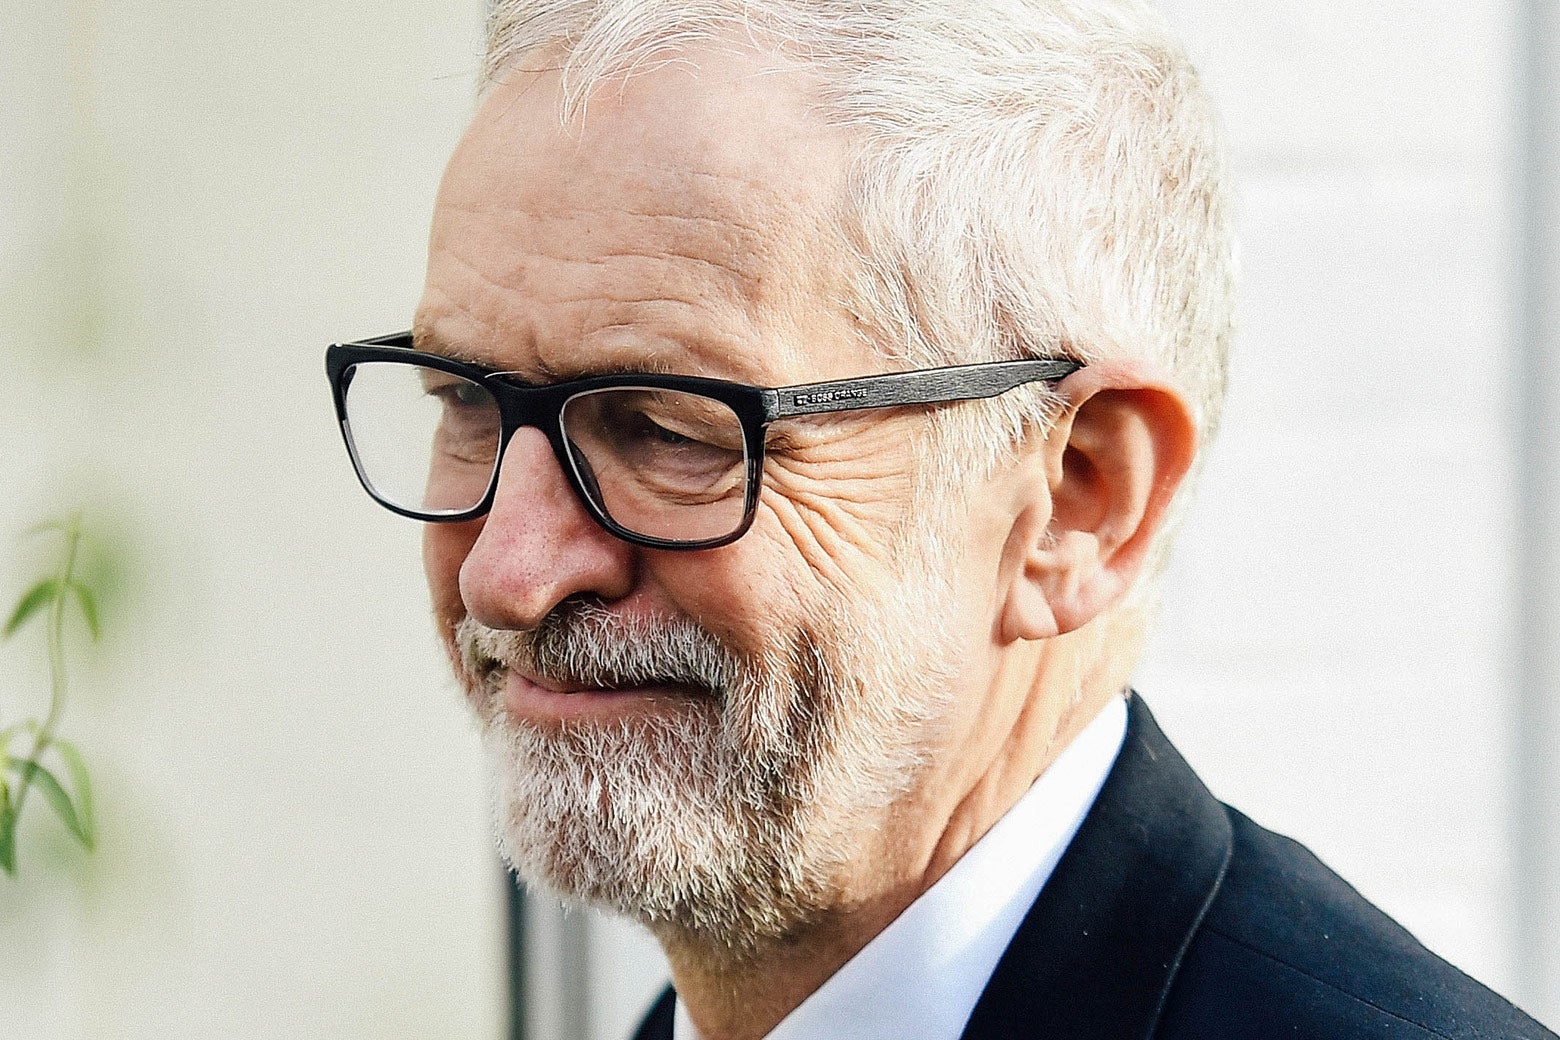 Close-up of Jeremy Corbyn's face.